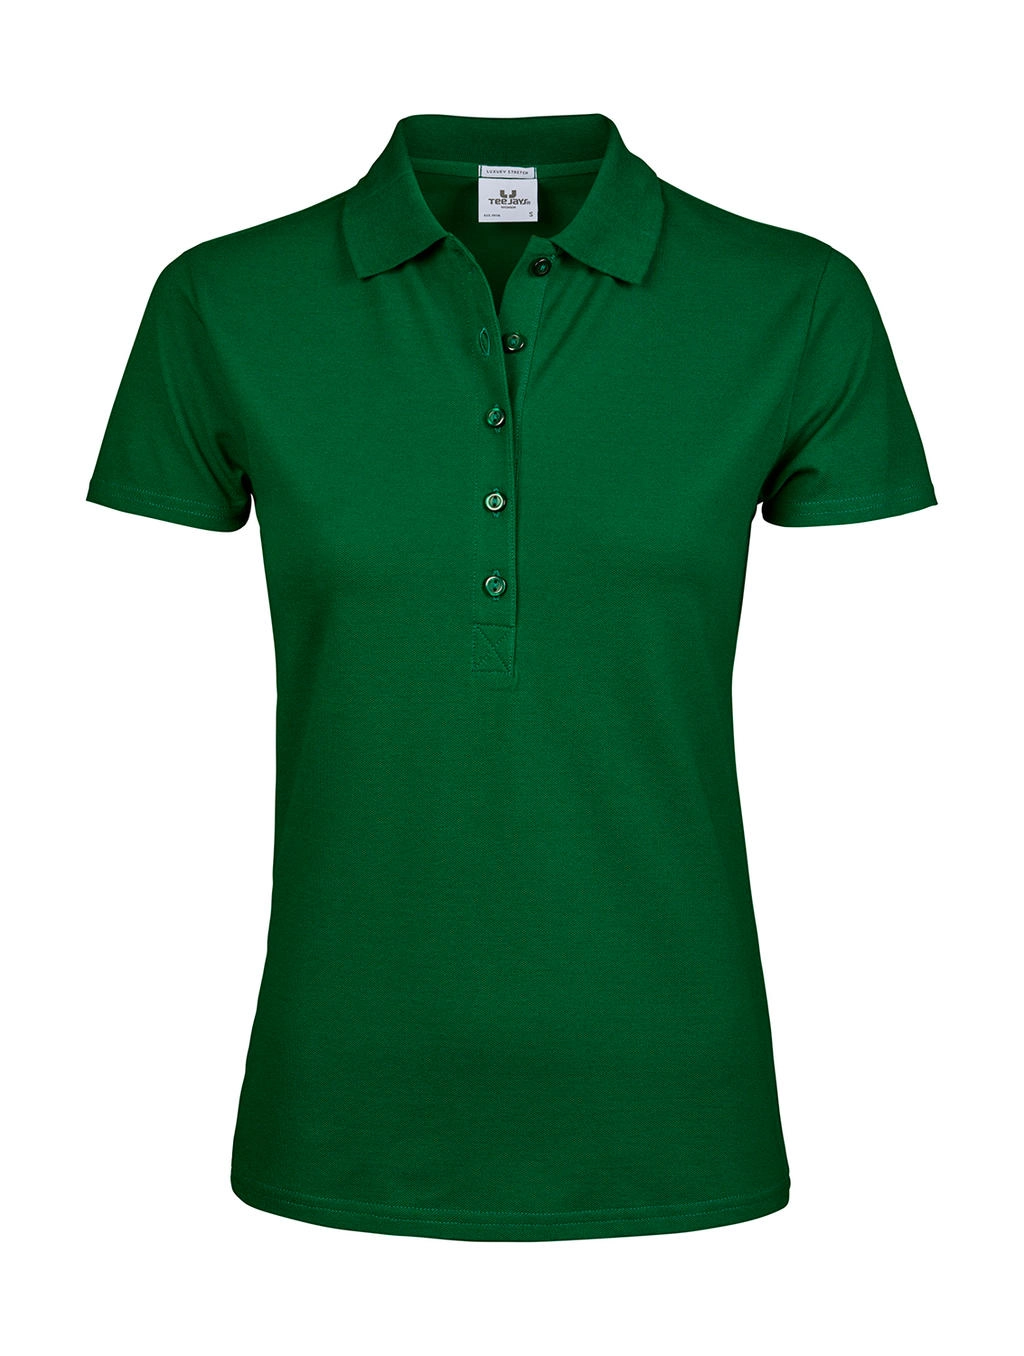 Ladies` Luxury Stretch Polo zum Besticken und Bedrucken in der Farbe Forest Green mit Ihren Logo, Schriftzug oder Motiv.